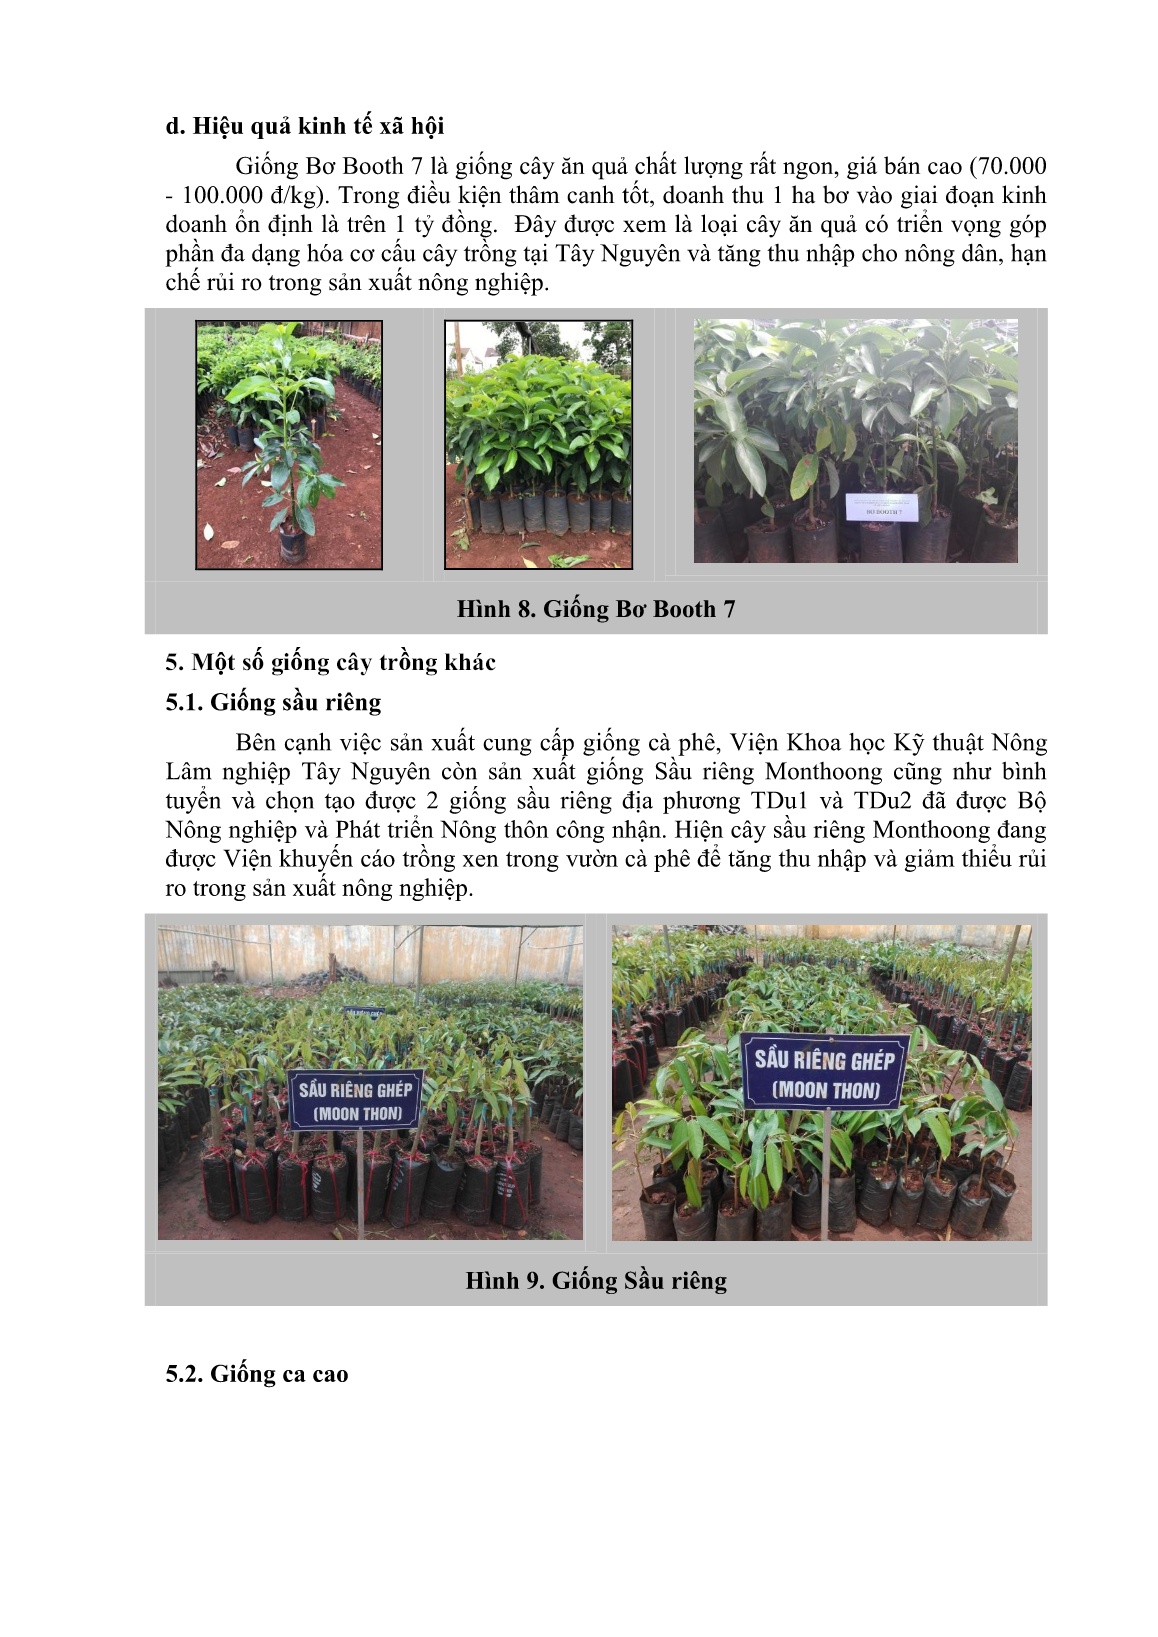 Giới thiệu một số giống cây trồng và các sản phẩm nông nghiệp phục vụ cho vùng Tây Nguyên trang 7